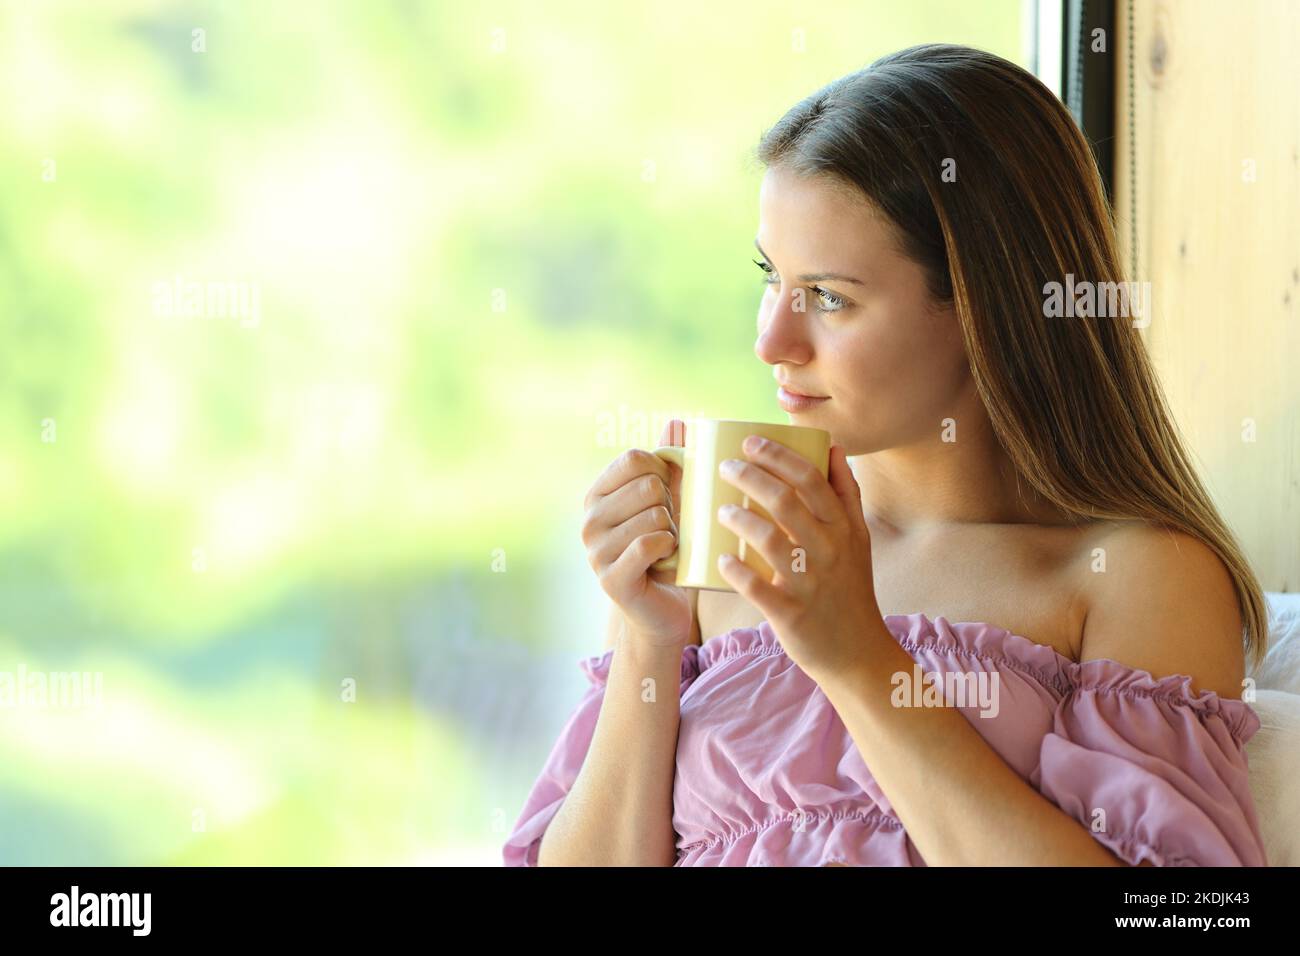 Fröhlicher Teenager, der Kaffeebecher hält und durch ein Fenster zu Hause oder in einem ländlichen Hotel schaut Stockfoto